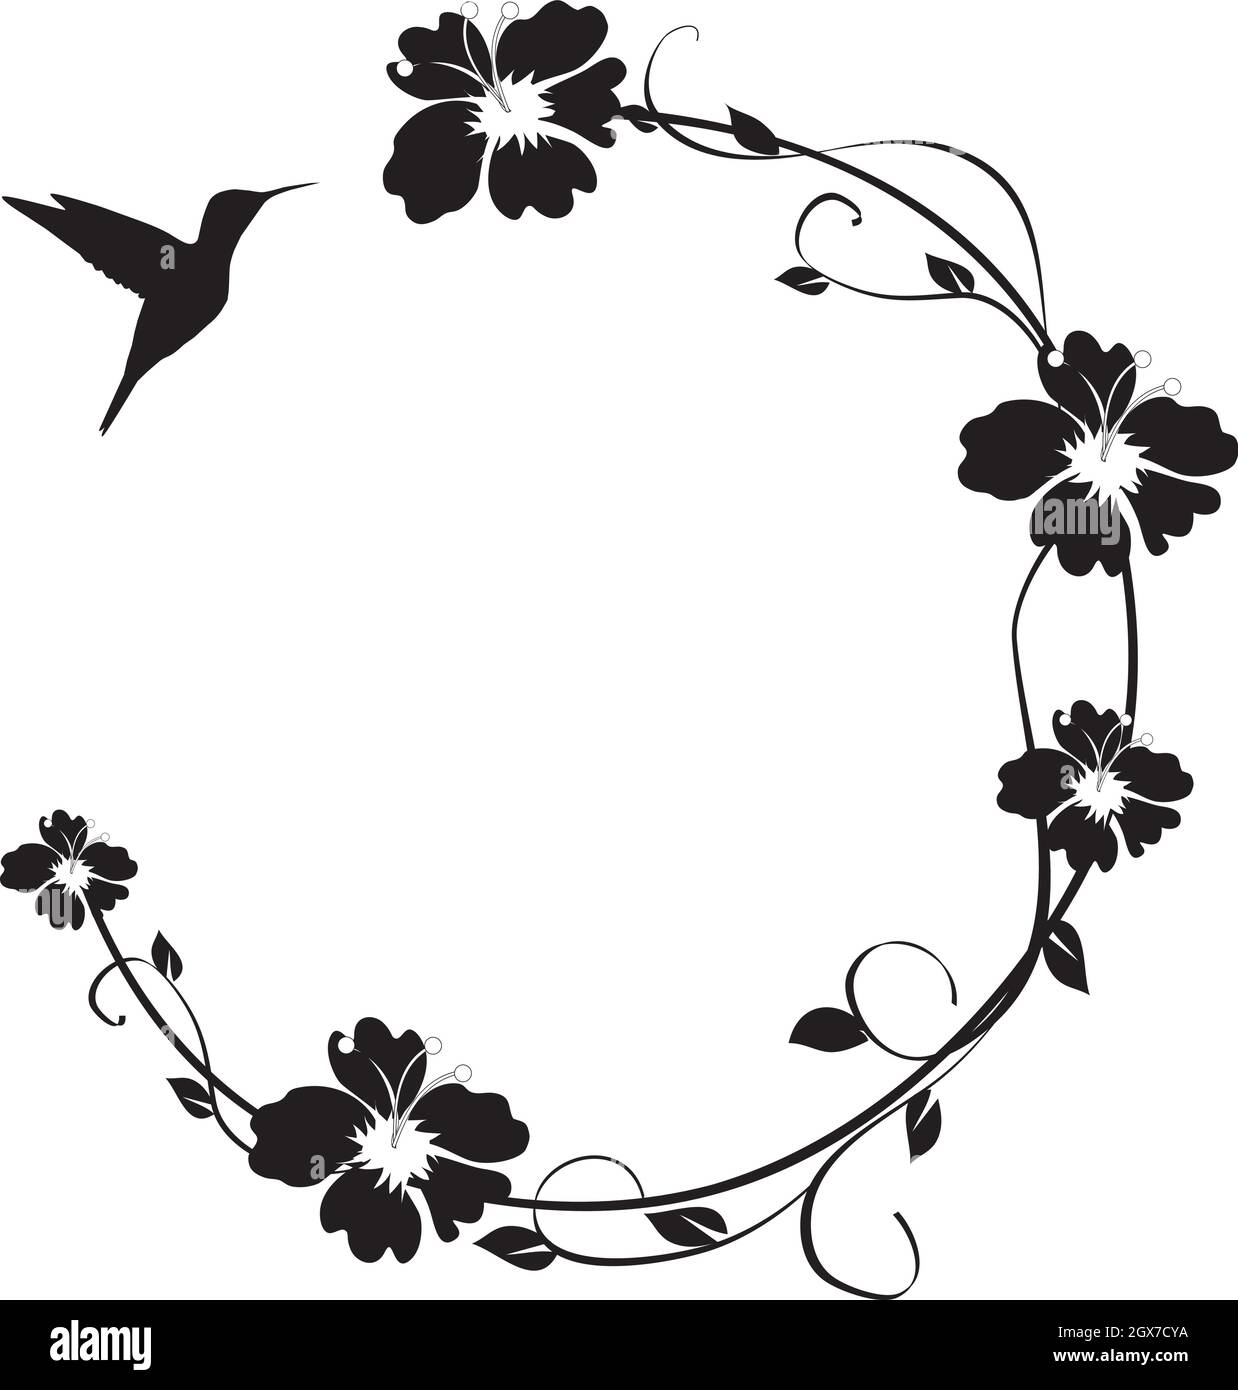 vektor-Illustration eines floralen Rahmens mit einem Kolibri. Vogel Silhouette. Stock Vektor